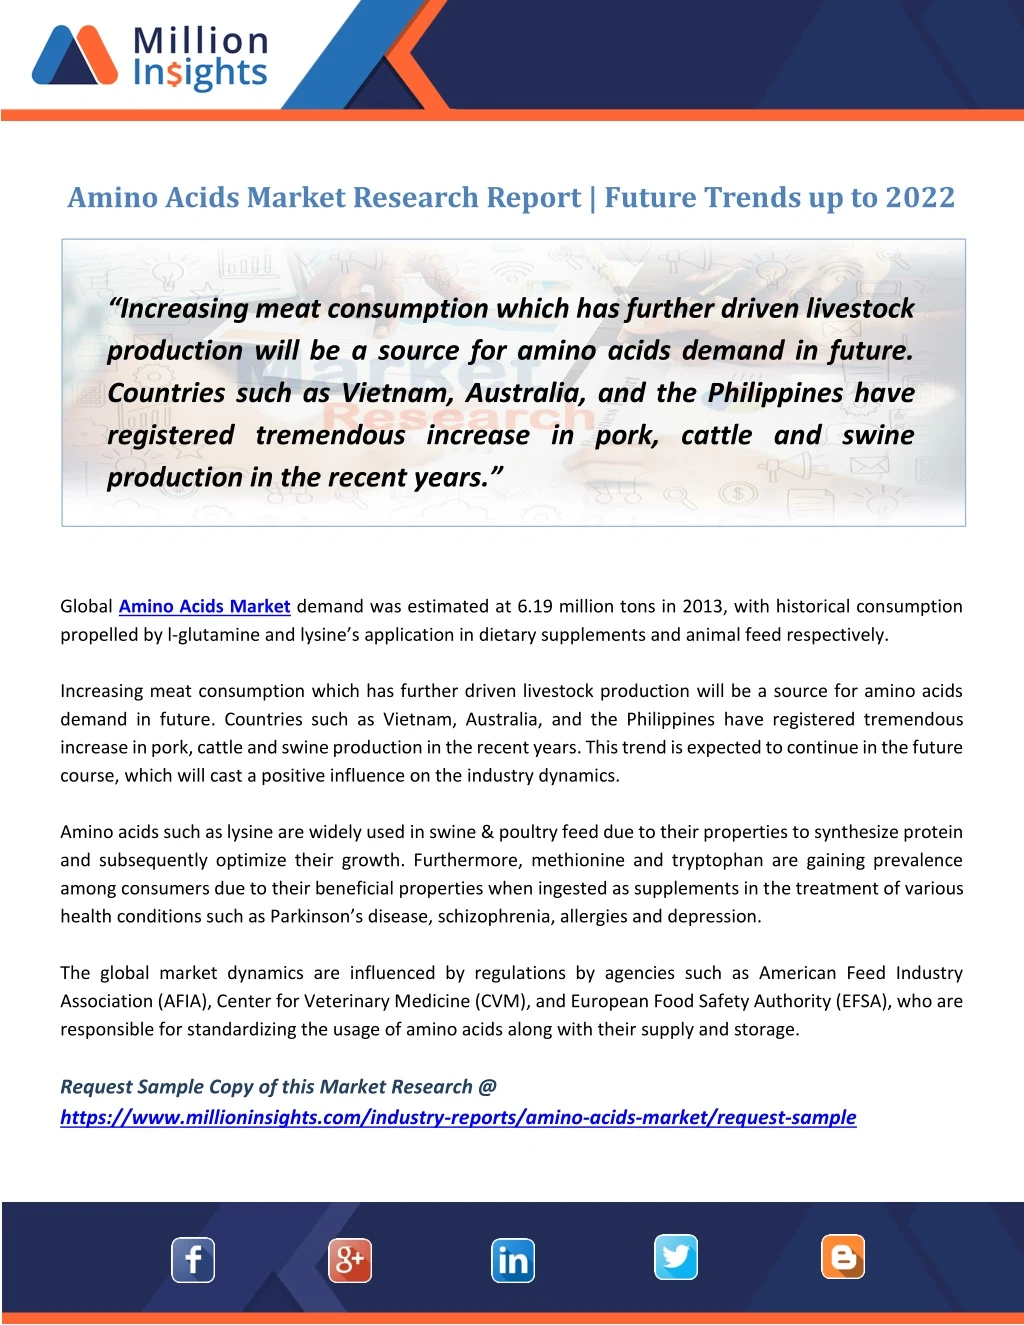 amino acids market research report future trends